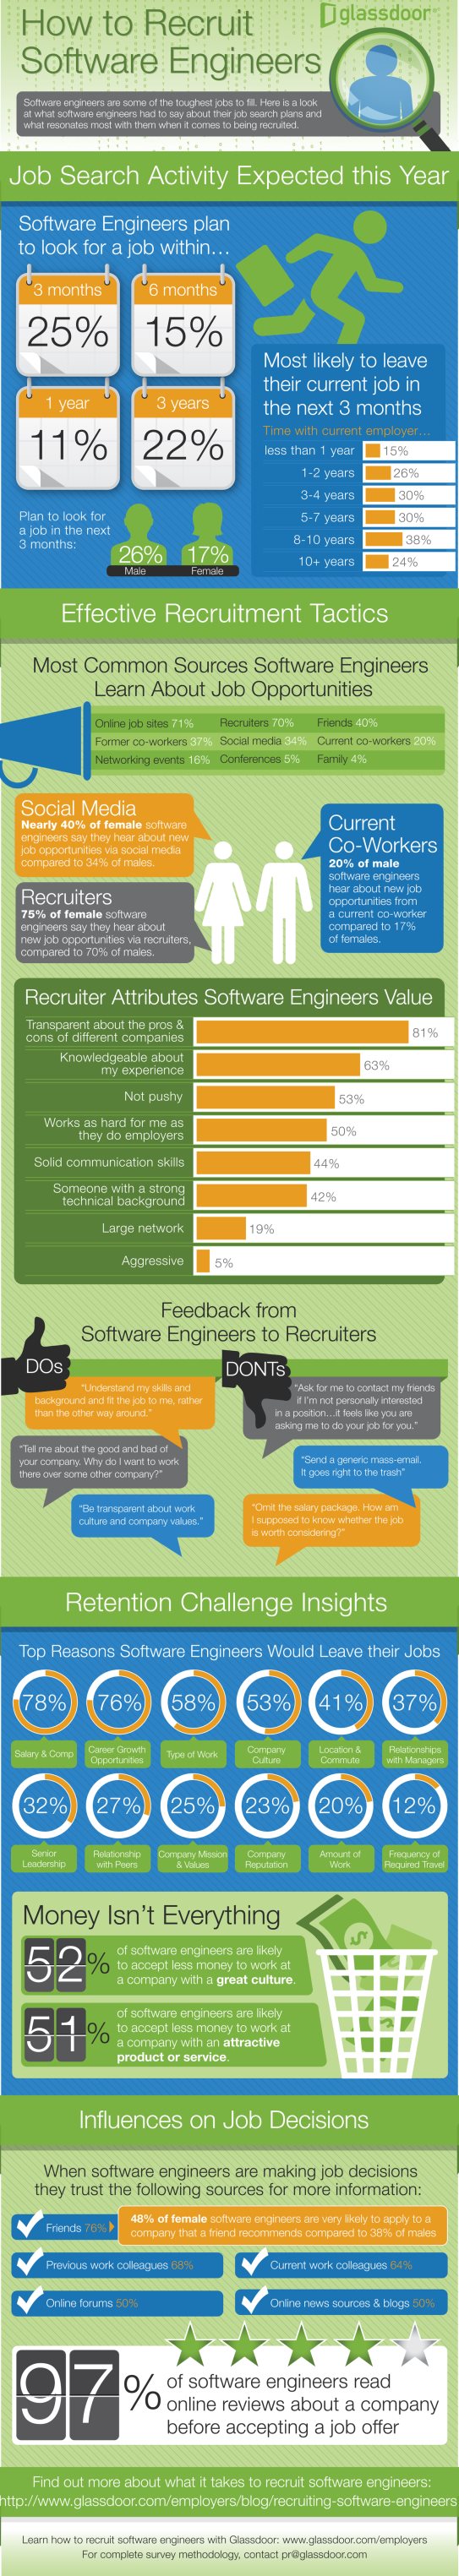 Glassdoor Recruiting Software Engineers infographic